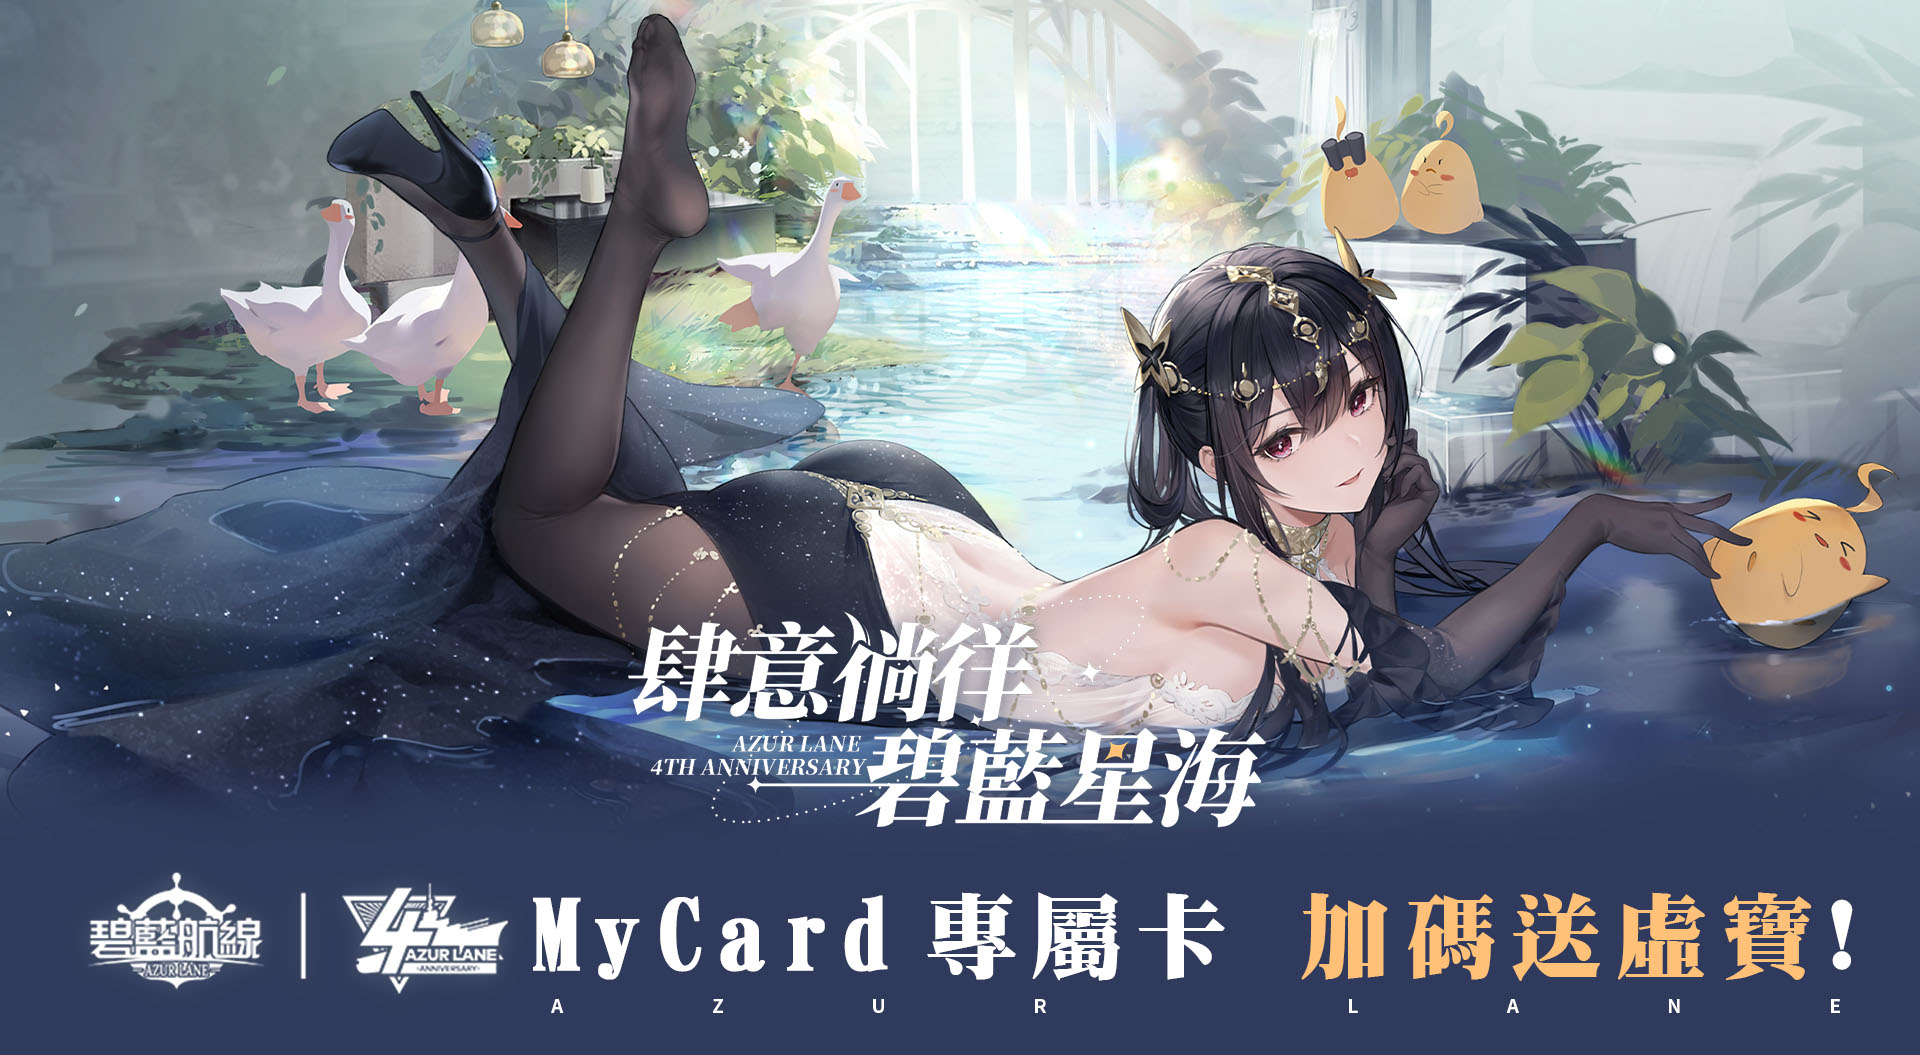   《碧藍航線》四周年MyCard專屬卡活動